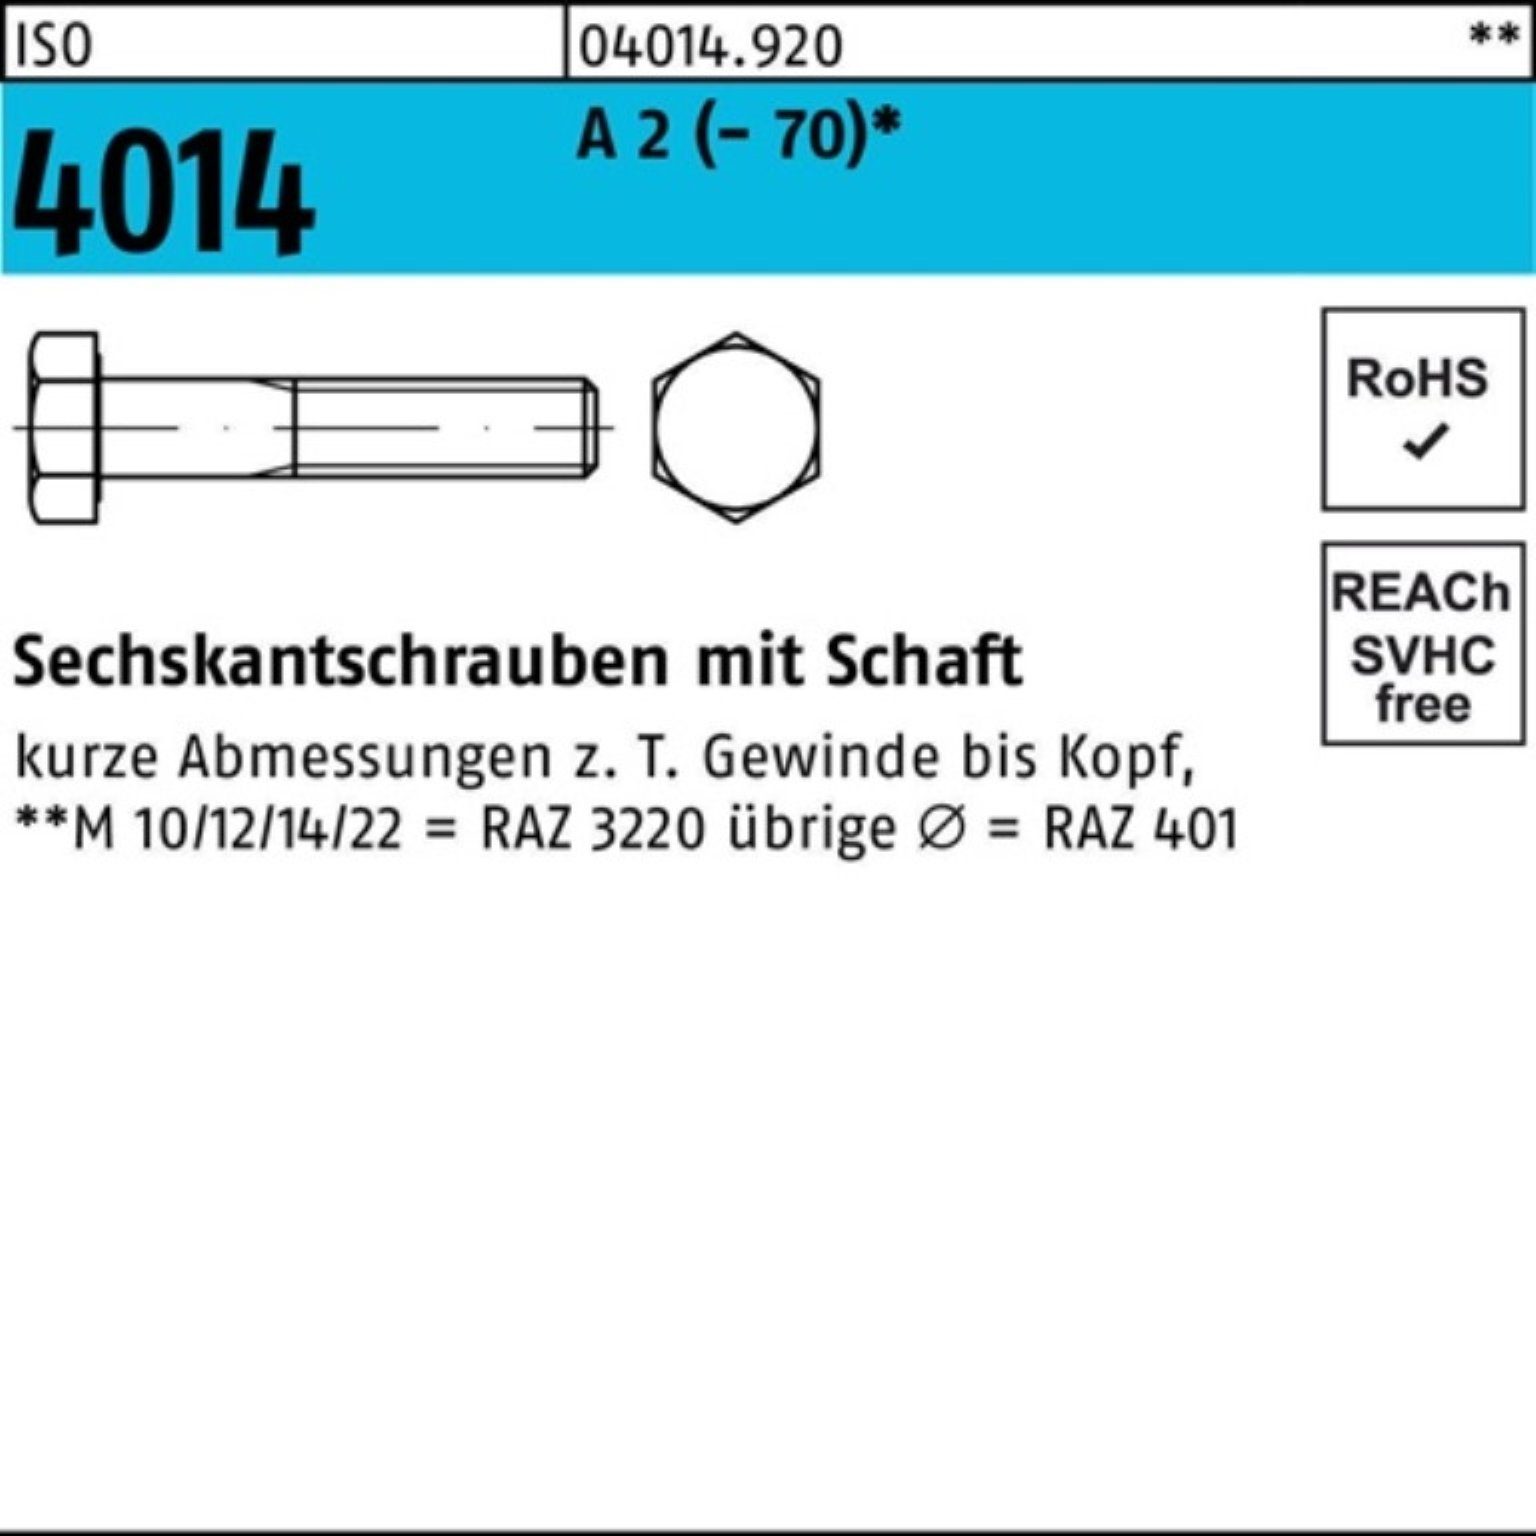 Bufab Sechskantschraube 100er Pack Sechskantschraube ISO 4014 Schaft M6x 110 A 2 (70) 50 St